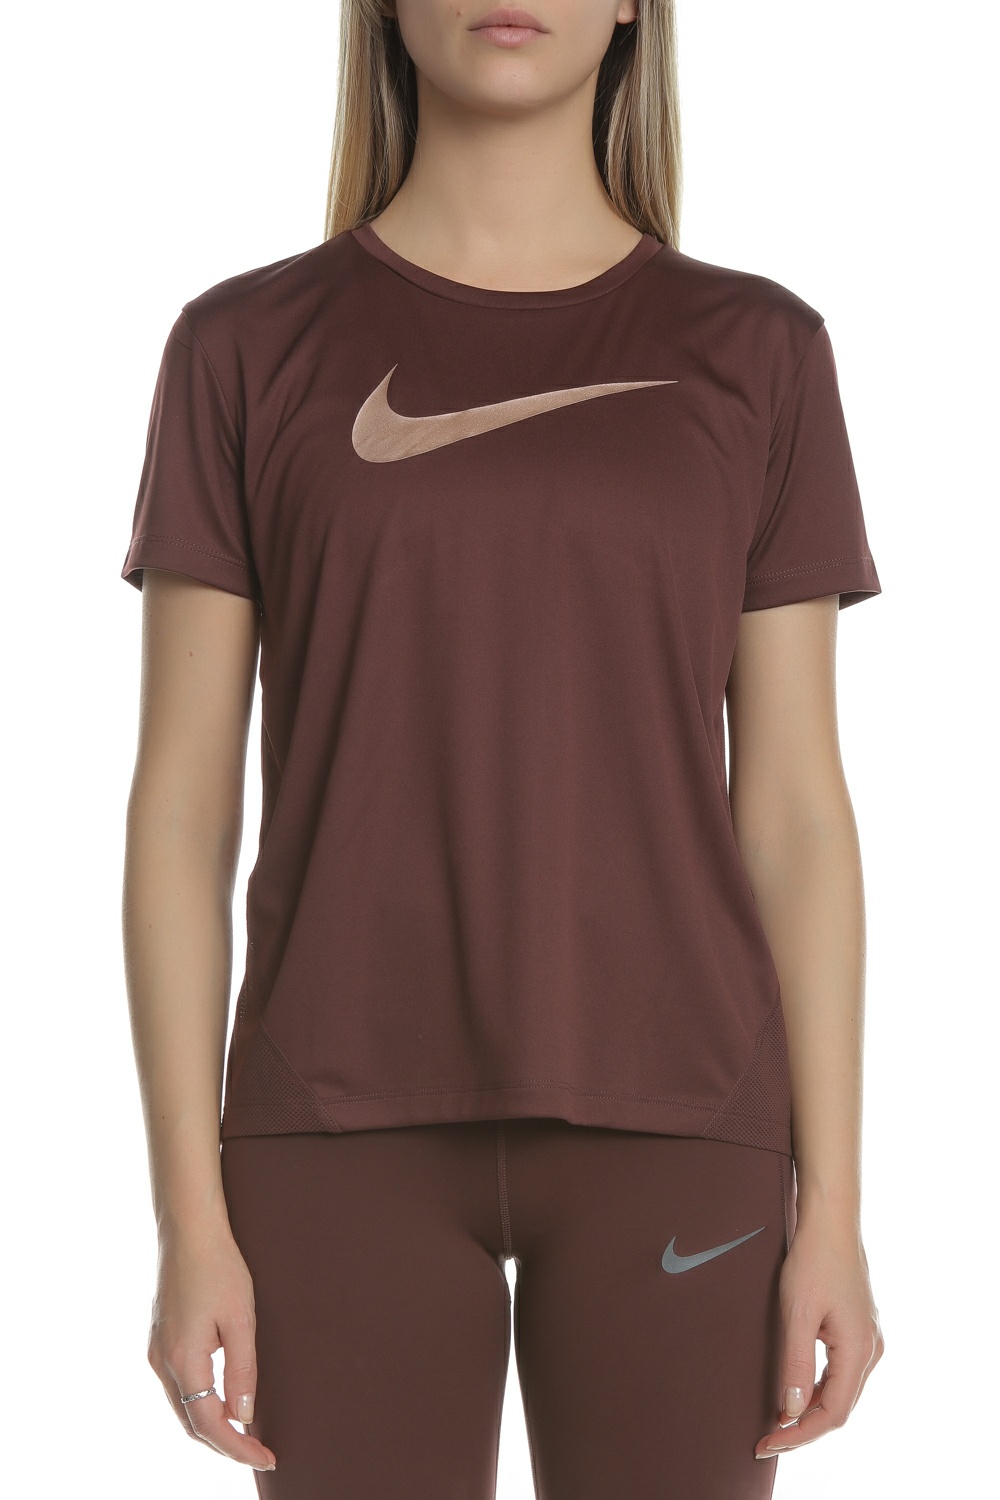 Γυναικεία/Ρούχα/Αθλητικά/T-shirt-Τοπ NIKE - Γυναικείο t-shirt Nike Miler μπορντό